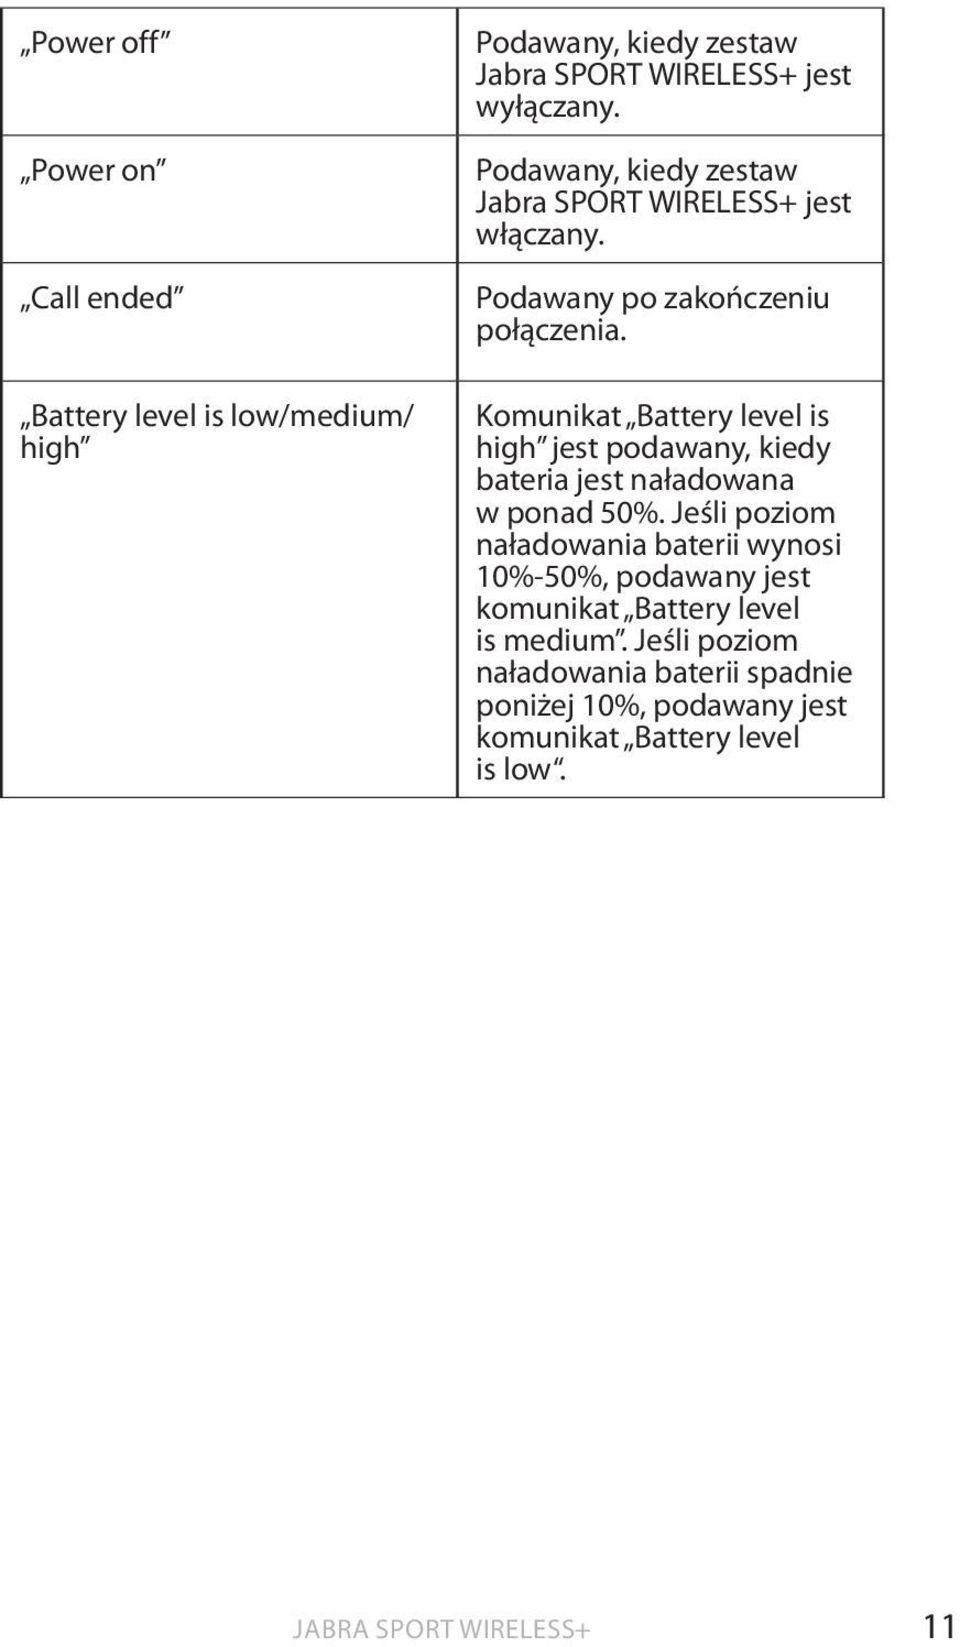 Komunikat Battery level is high jest podawany, kiedy bateria jest naładowana w ponad 50%.